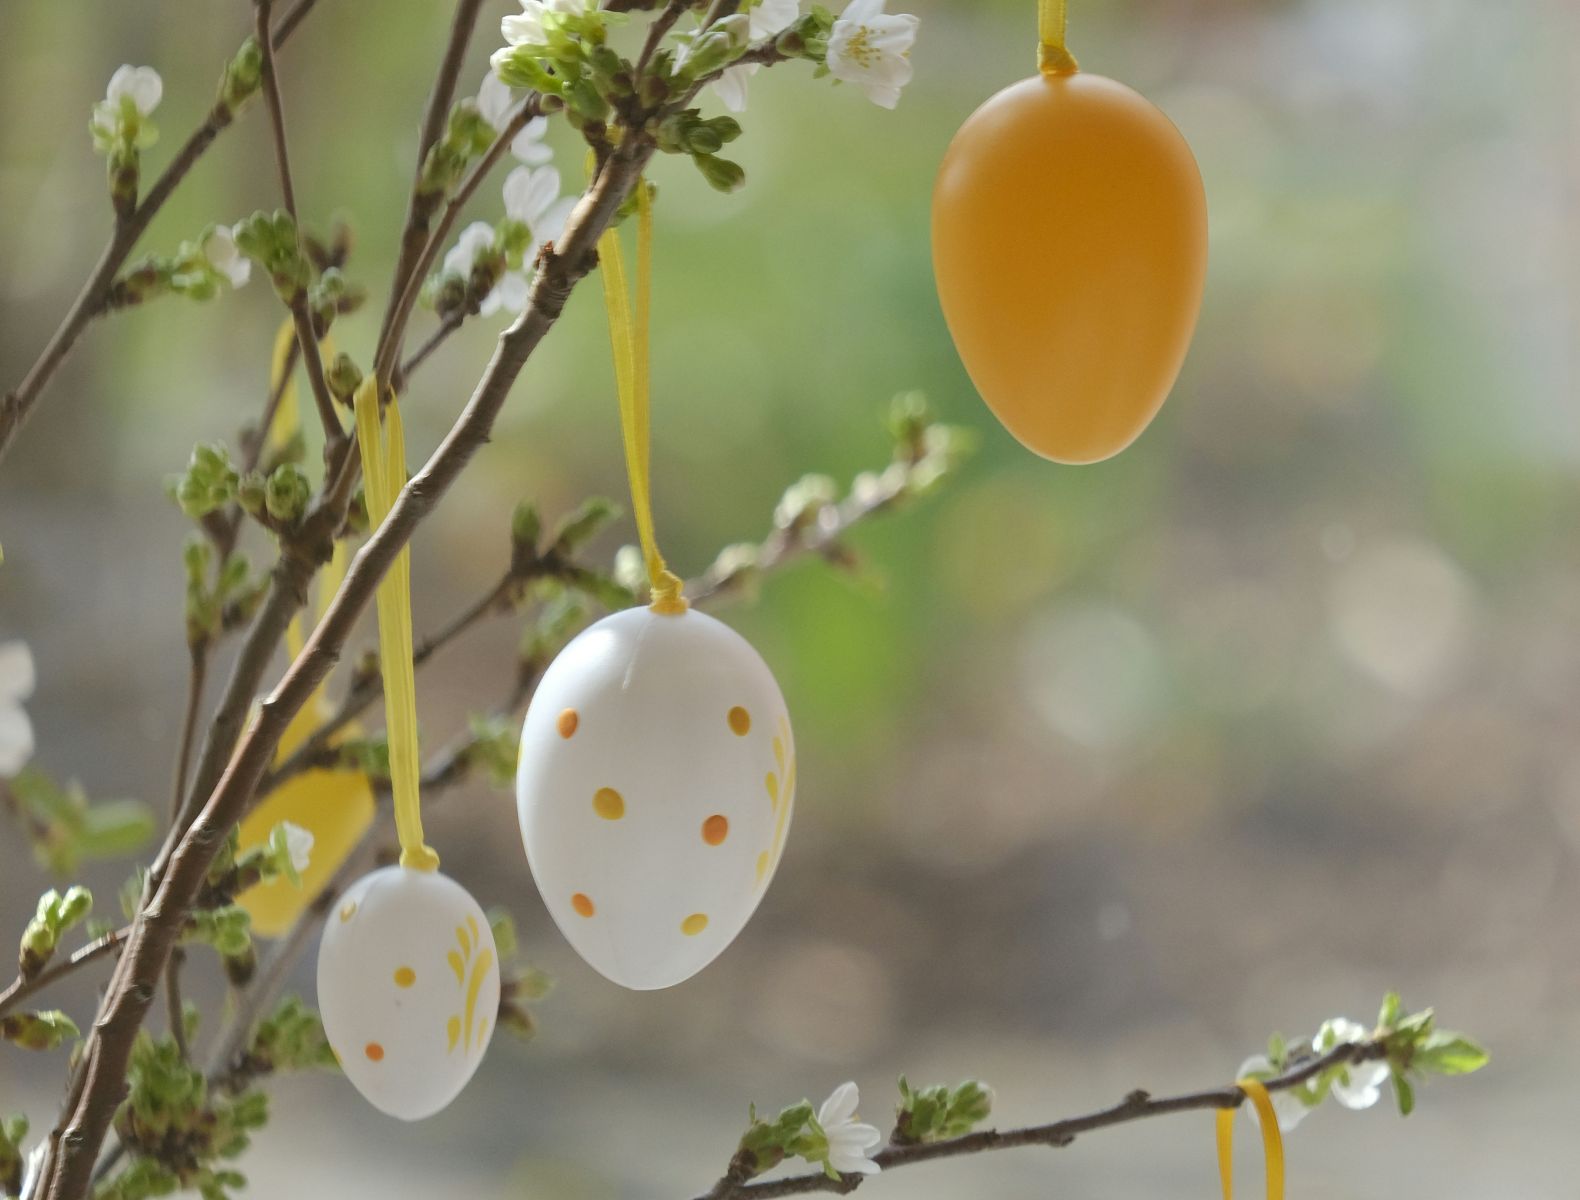 Fruchtportal wünscht frohe Ostern!